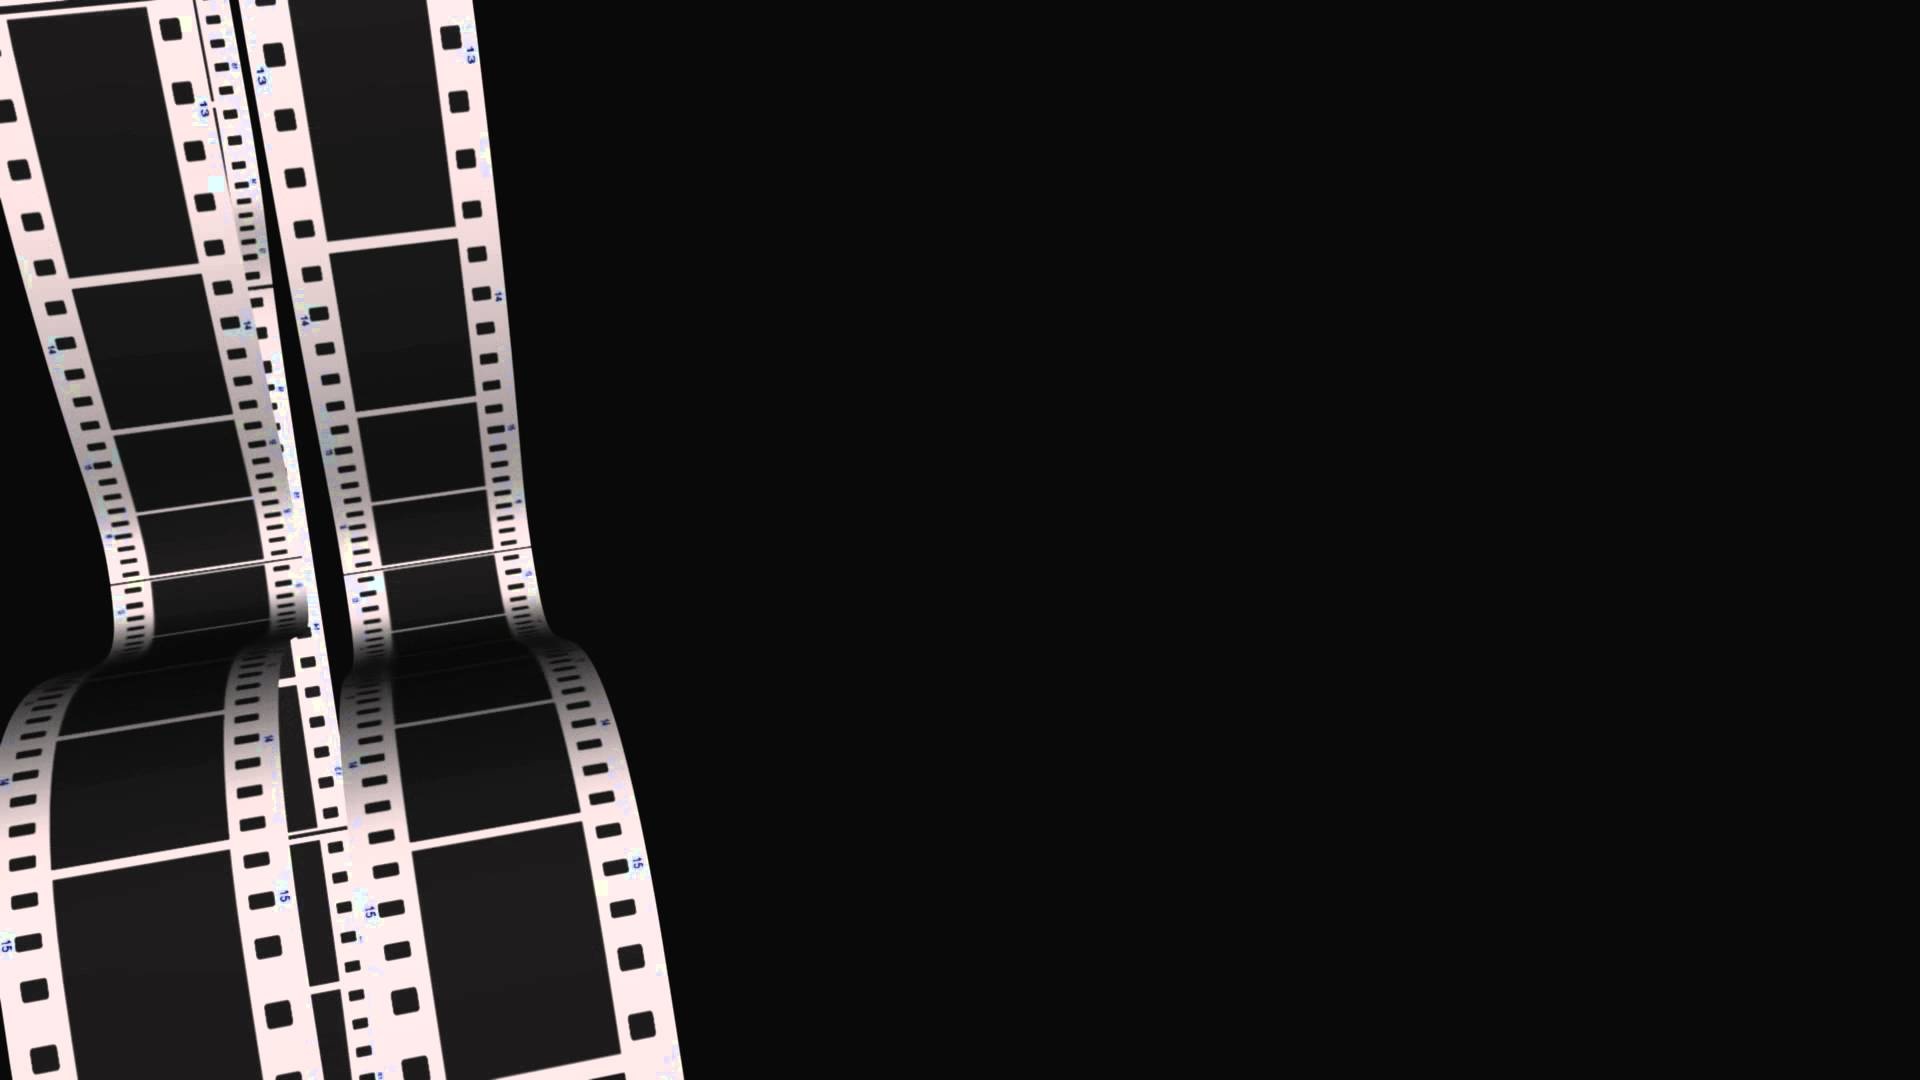 Film Stock, Movies, 35mm film, wallpaper, 1920x1080 Full HD Desktop